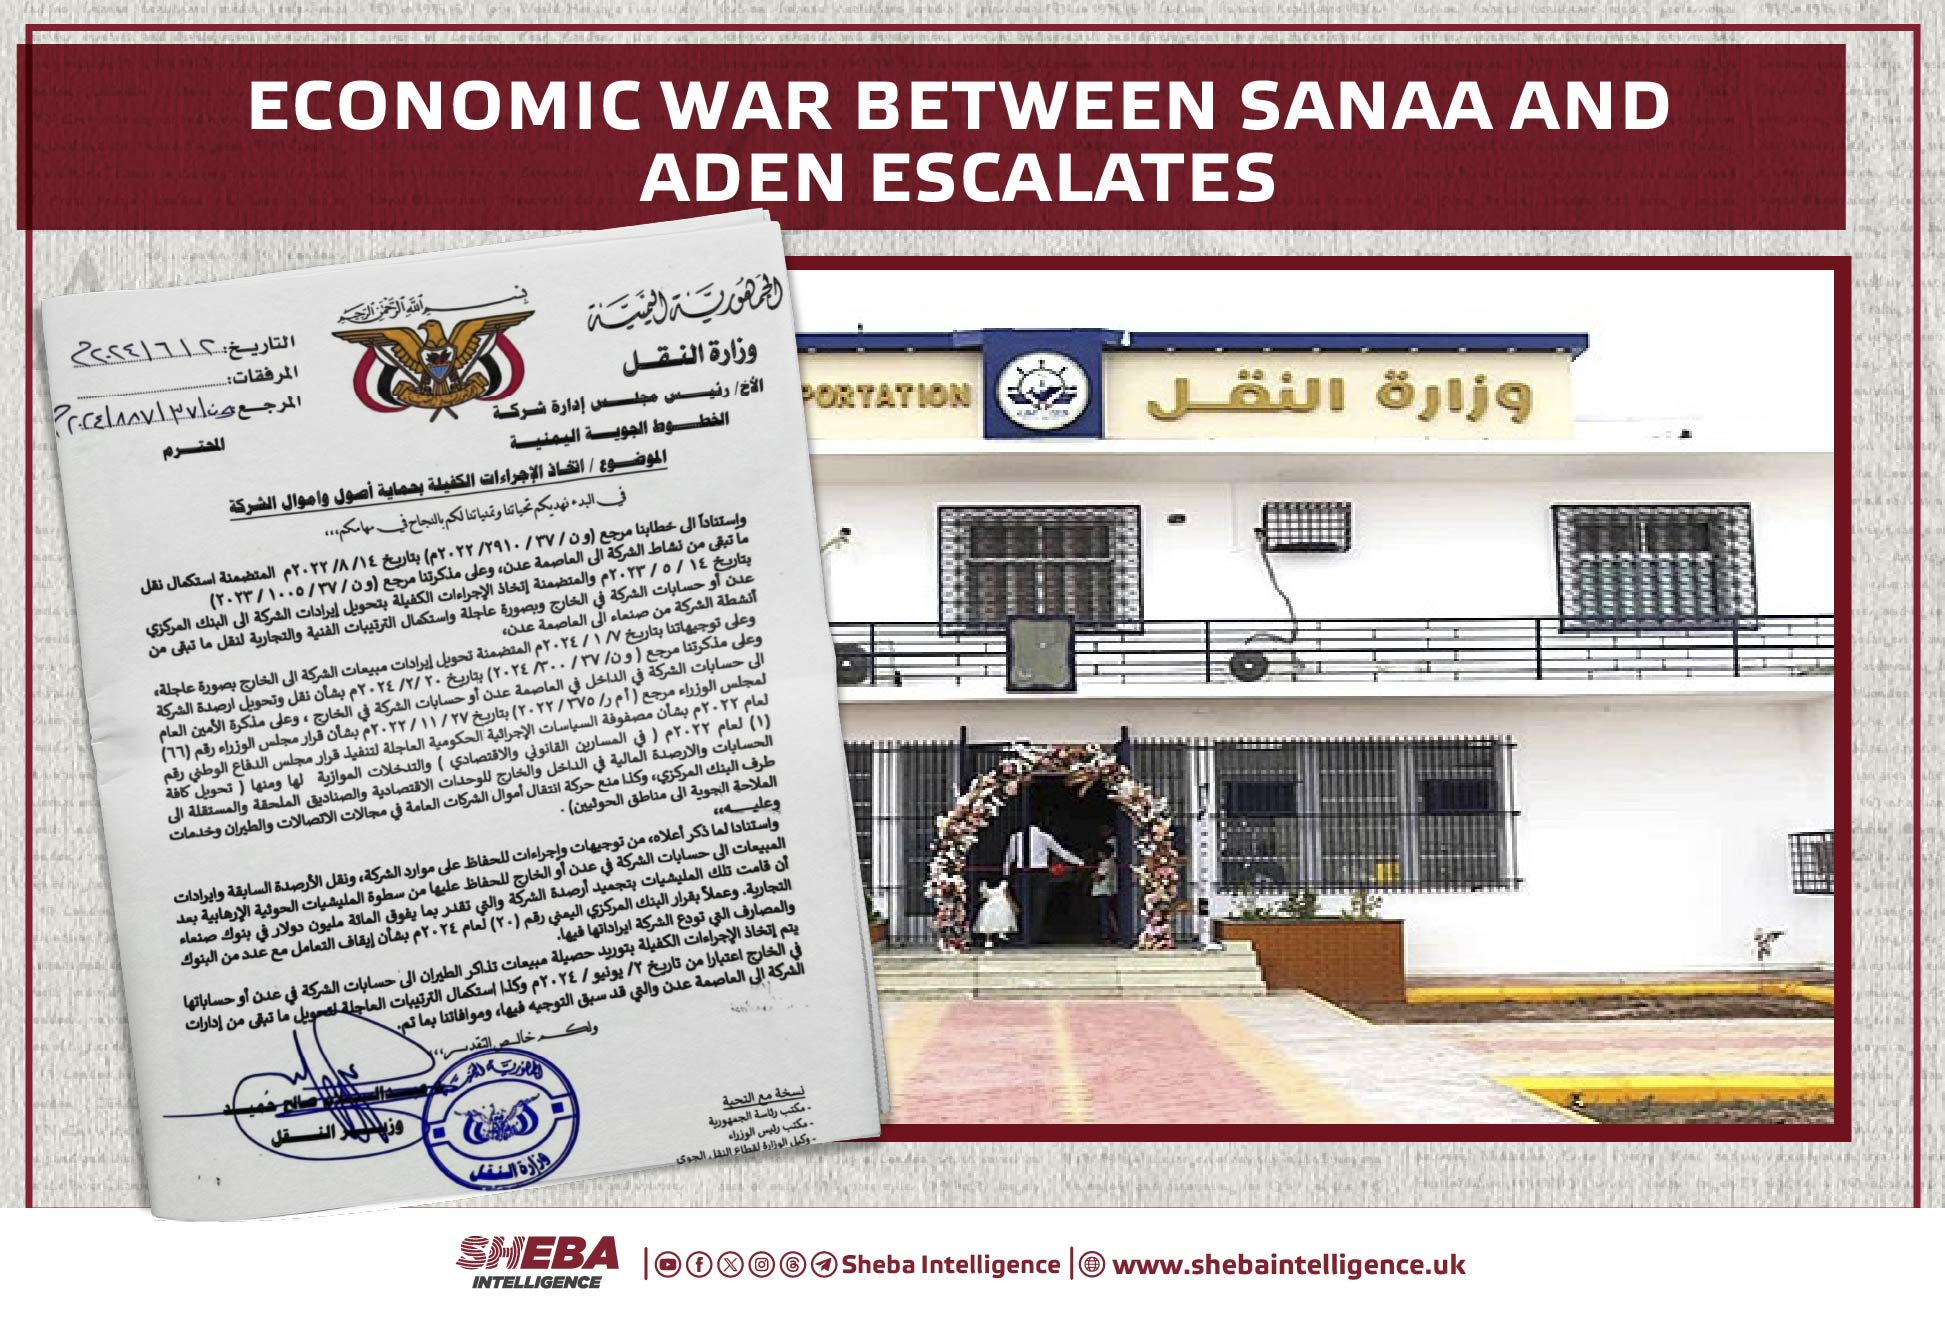 Economic War Between Sanaa and Aden Escalates